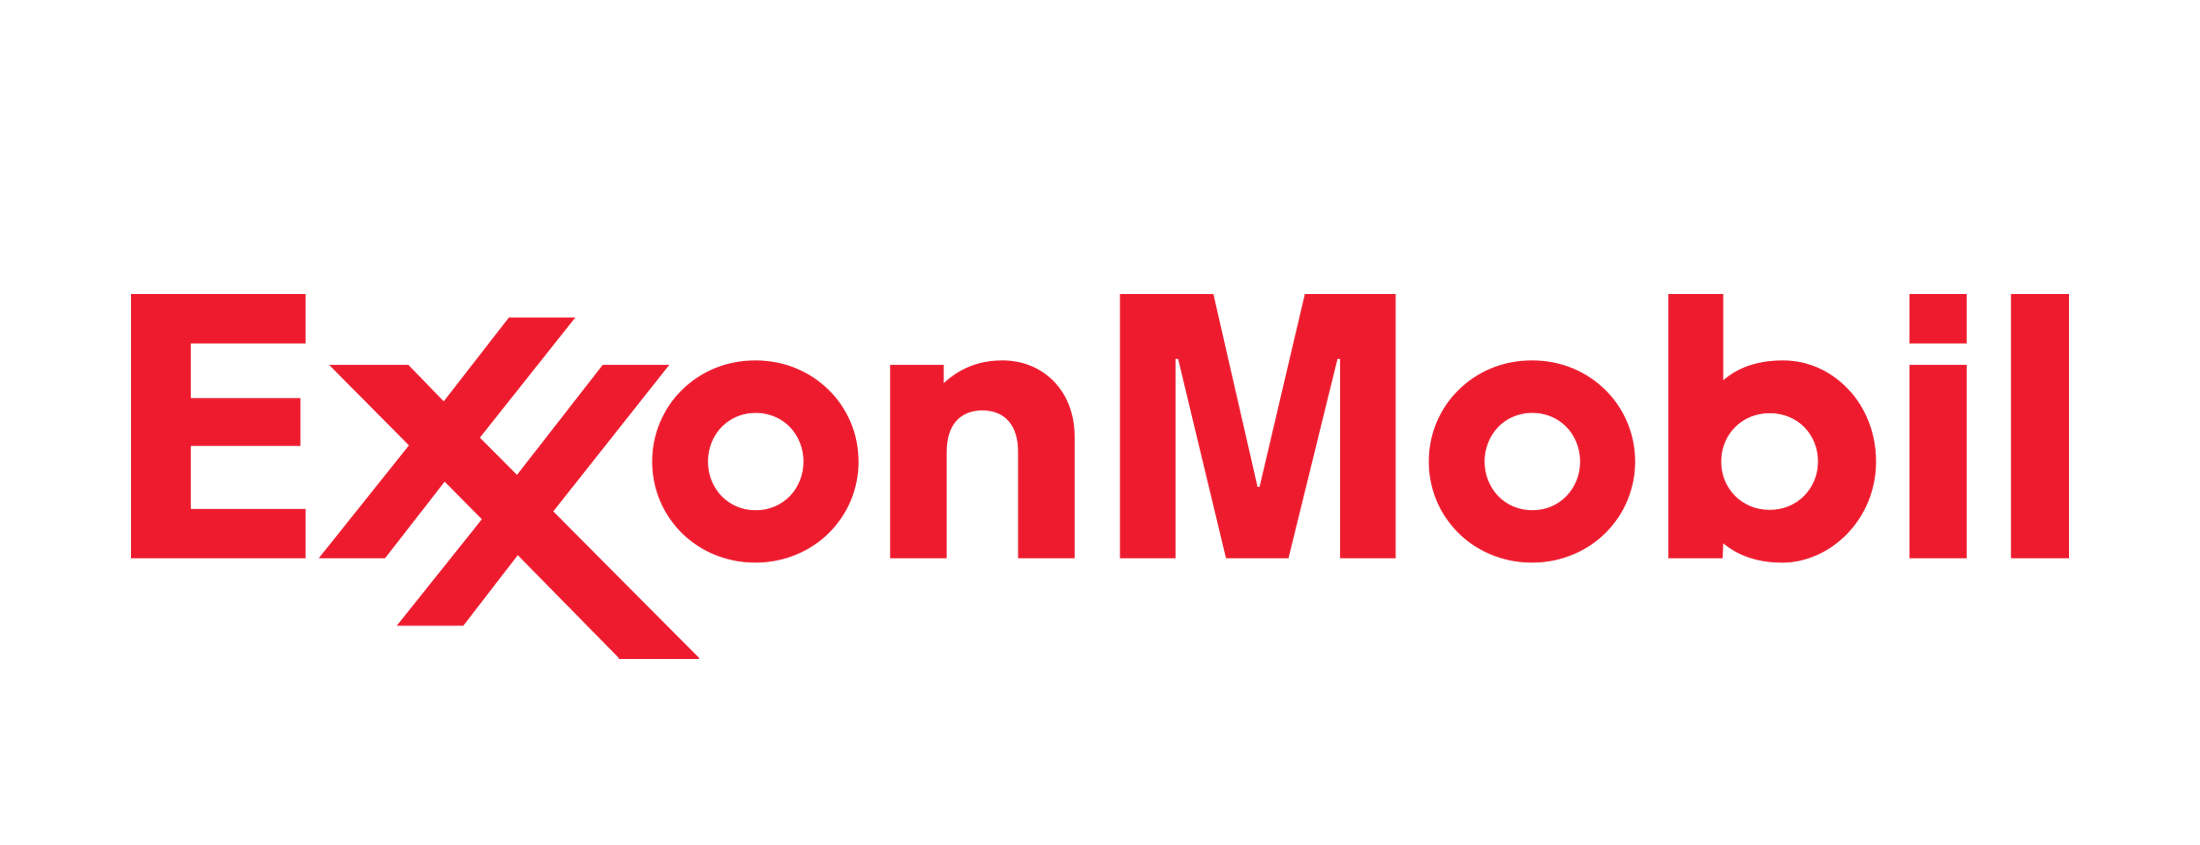 Î‘Ï€Î¿Ï„Î­Î»ÎµÏƒÎ¼Î± ÎµÎ¹ÎºÏŒÎ½Î±Ï‚ Î³Î¹Î± exxonmobil logo